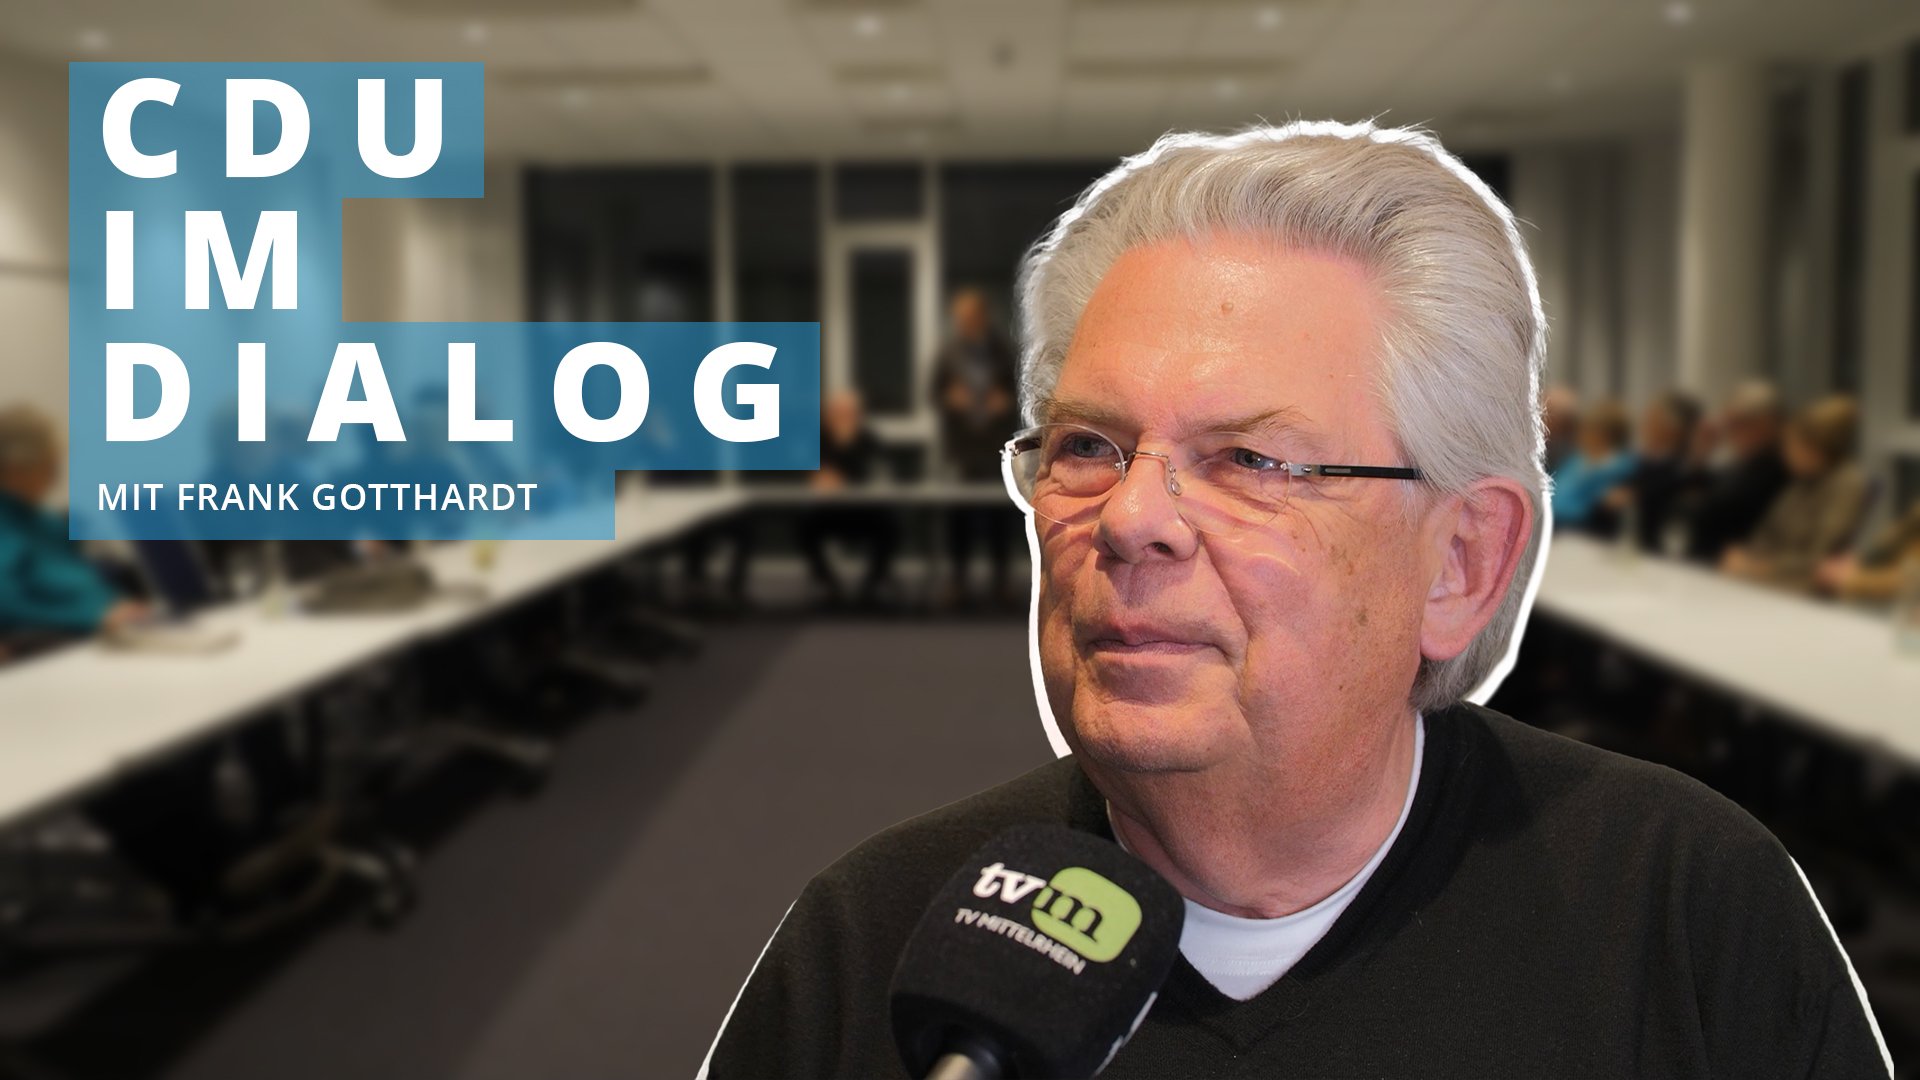 CDU im Dialog: Unternehmer Frank Gotthardt zu Politik und Wirtschaft